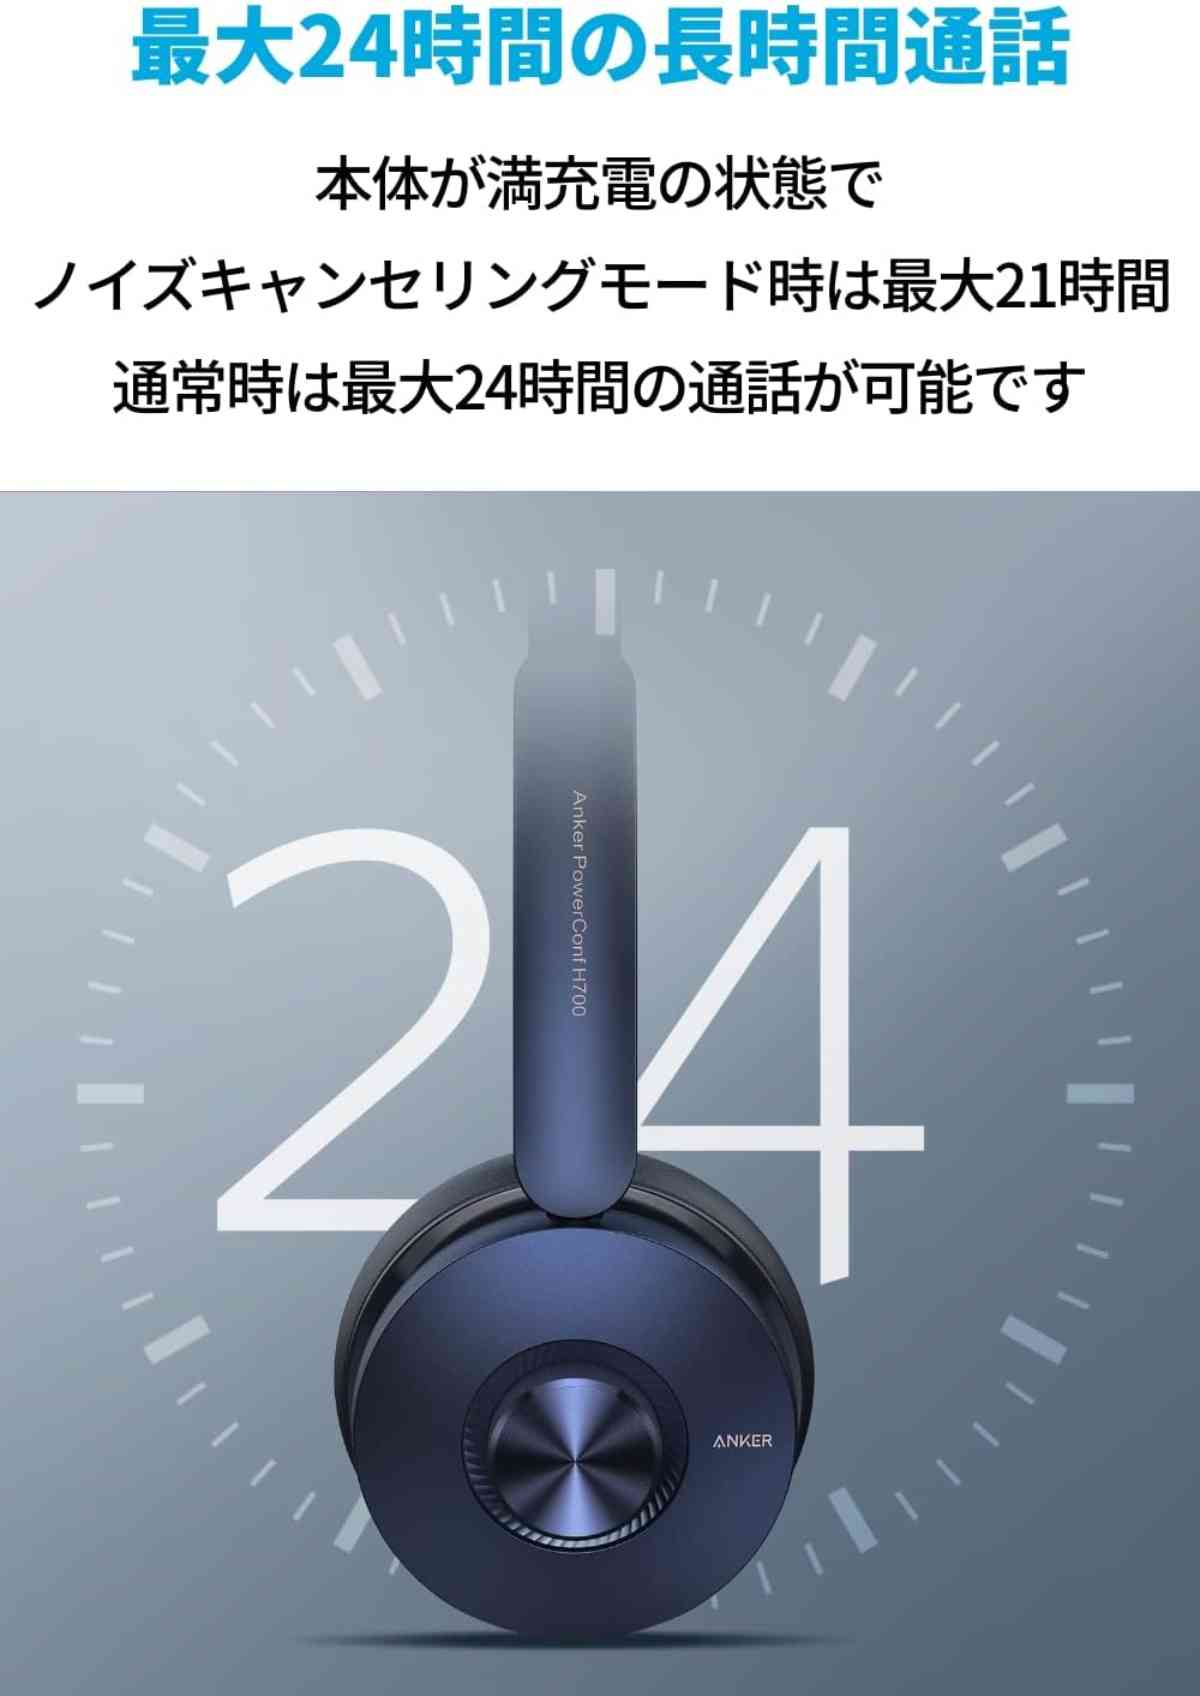 アンカーのワイヤレスヘッドセット「Anker PowerConf H700」は24時間連続使用できる